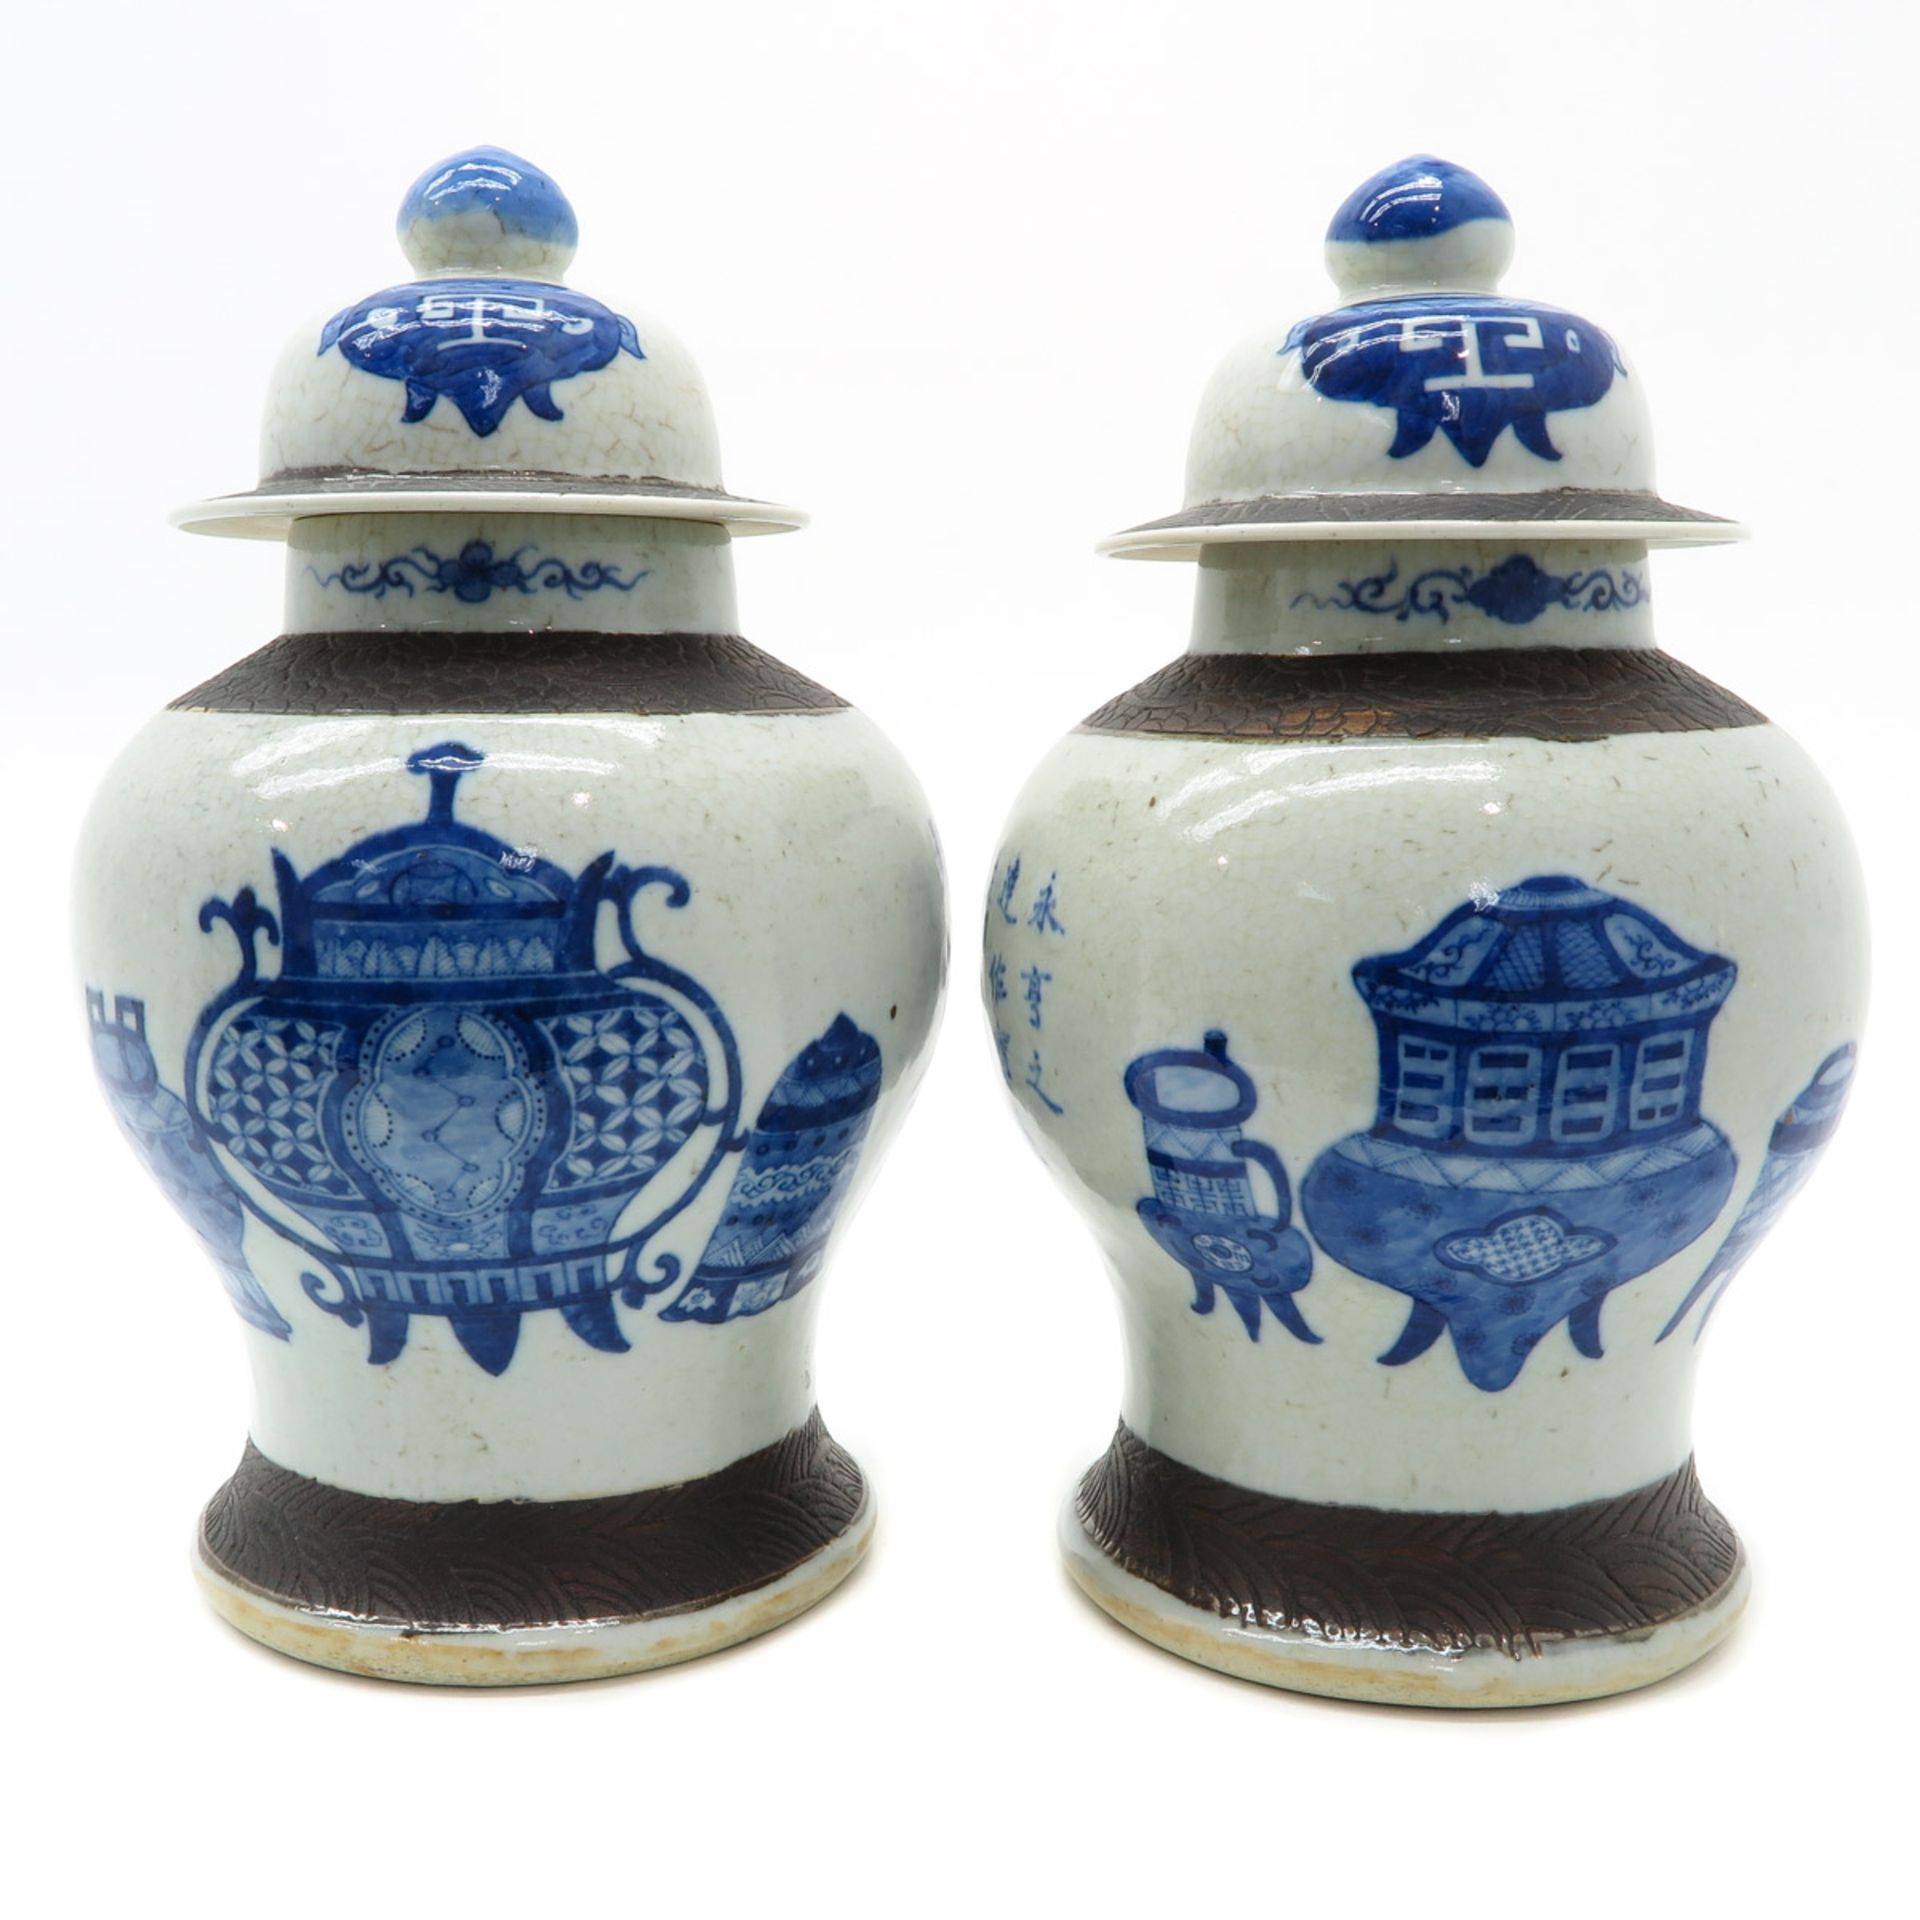 Pair of Lidded Vases